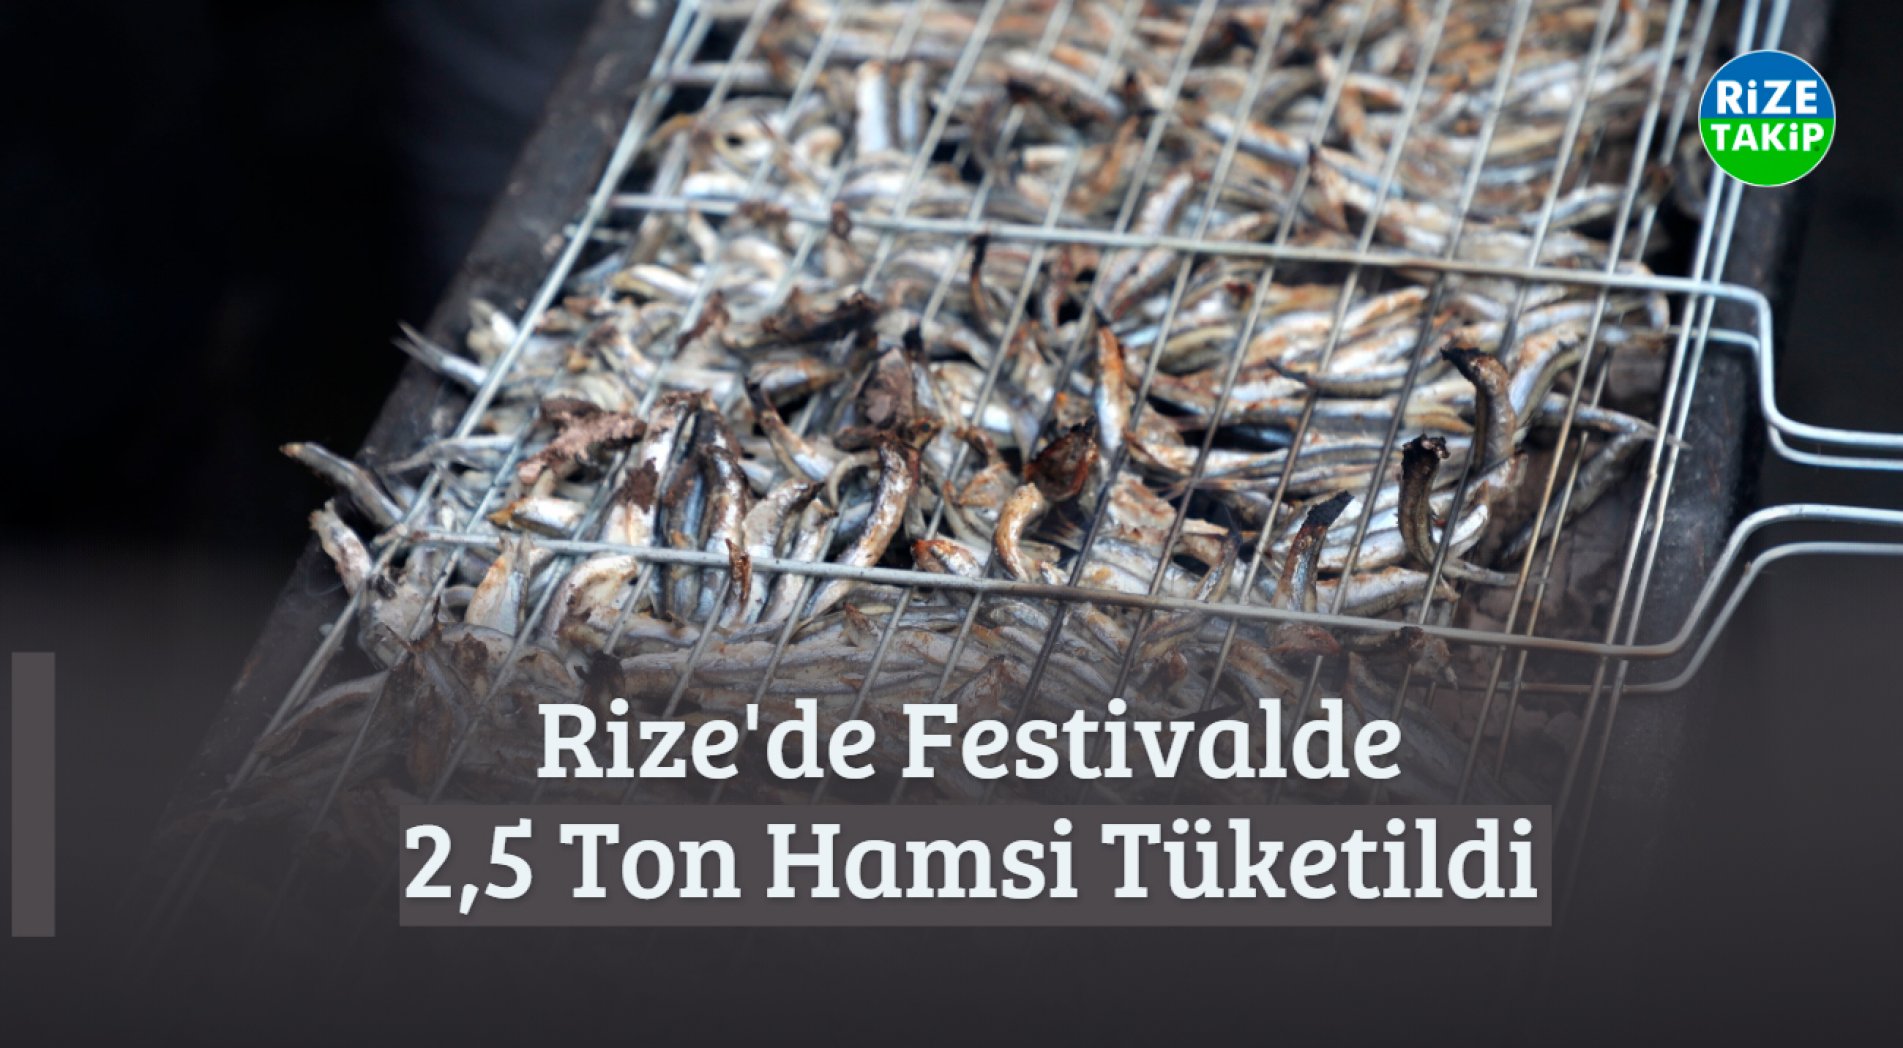 Rize'deki Hamsi Festivaline Yoğun İlgi